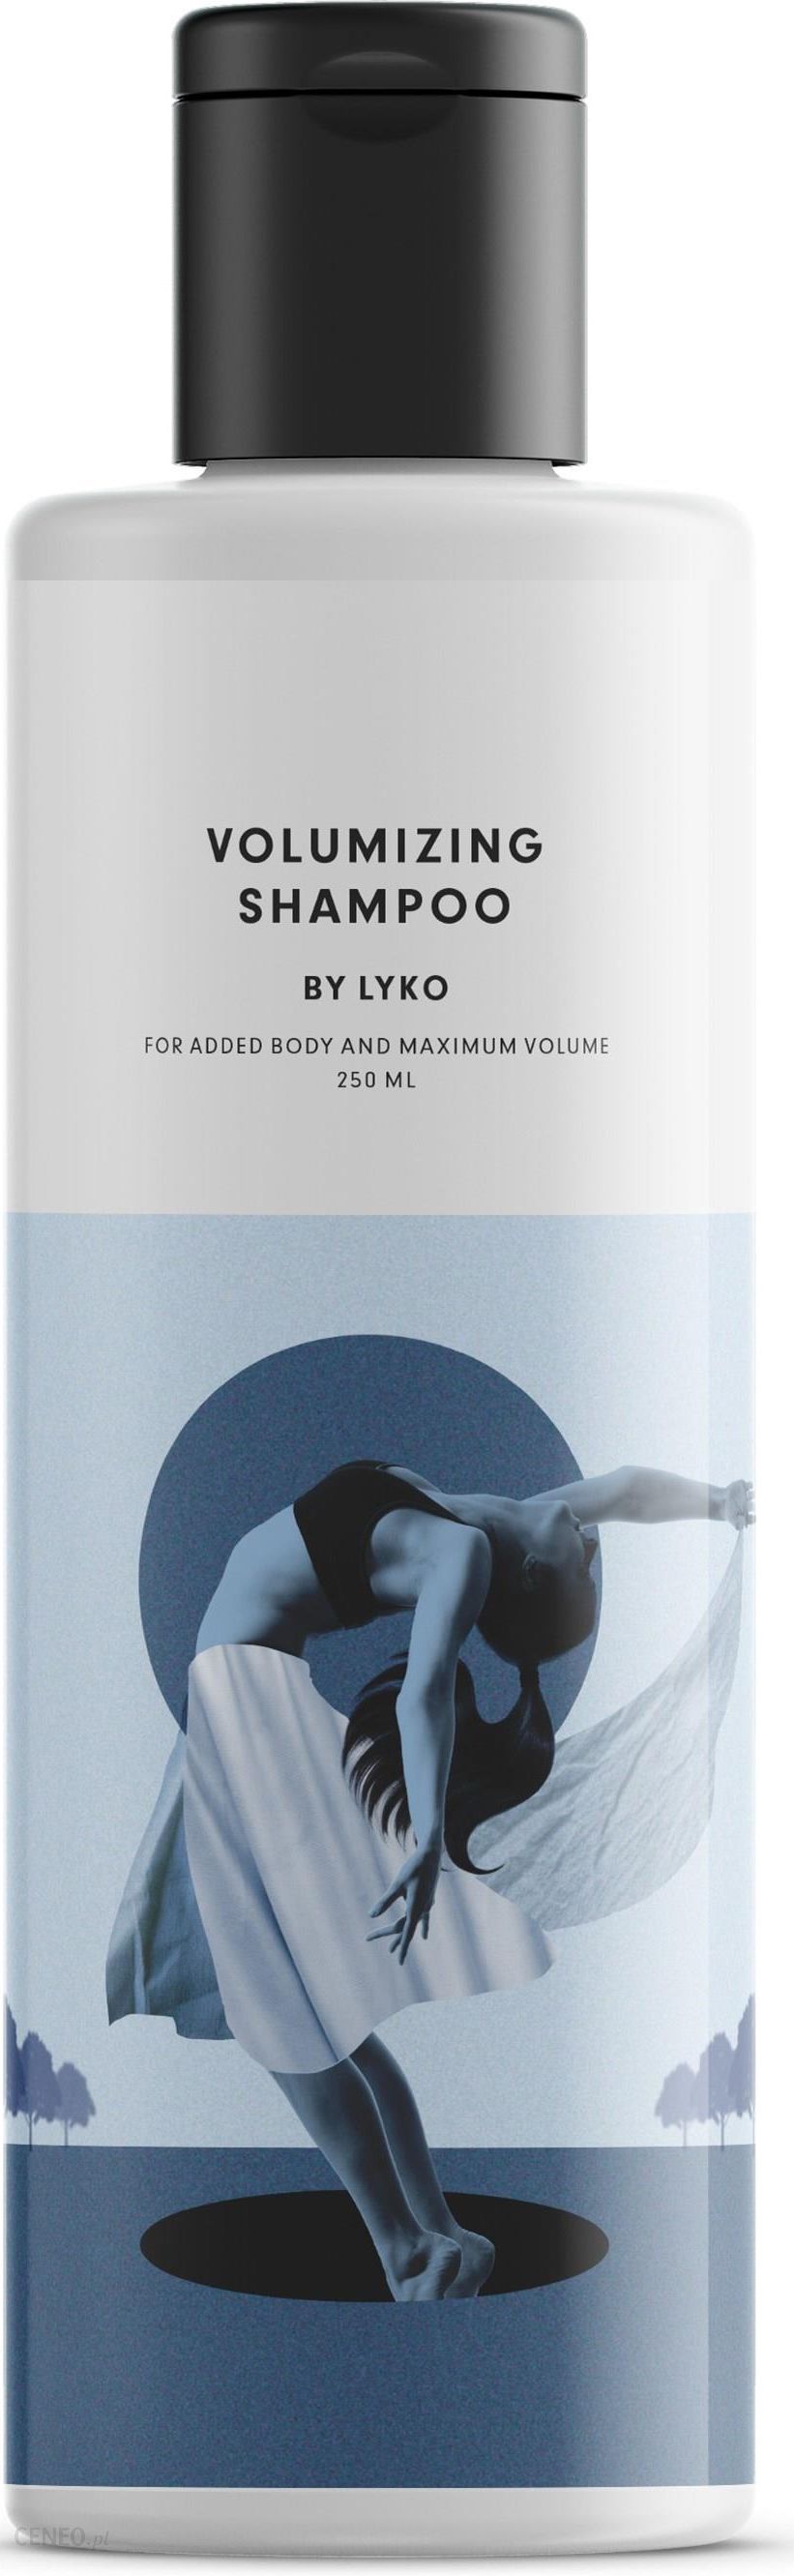 szampon do włosów lyko szampon dodający objętości 250 ml opinie i